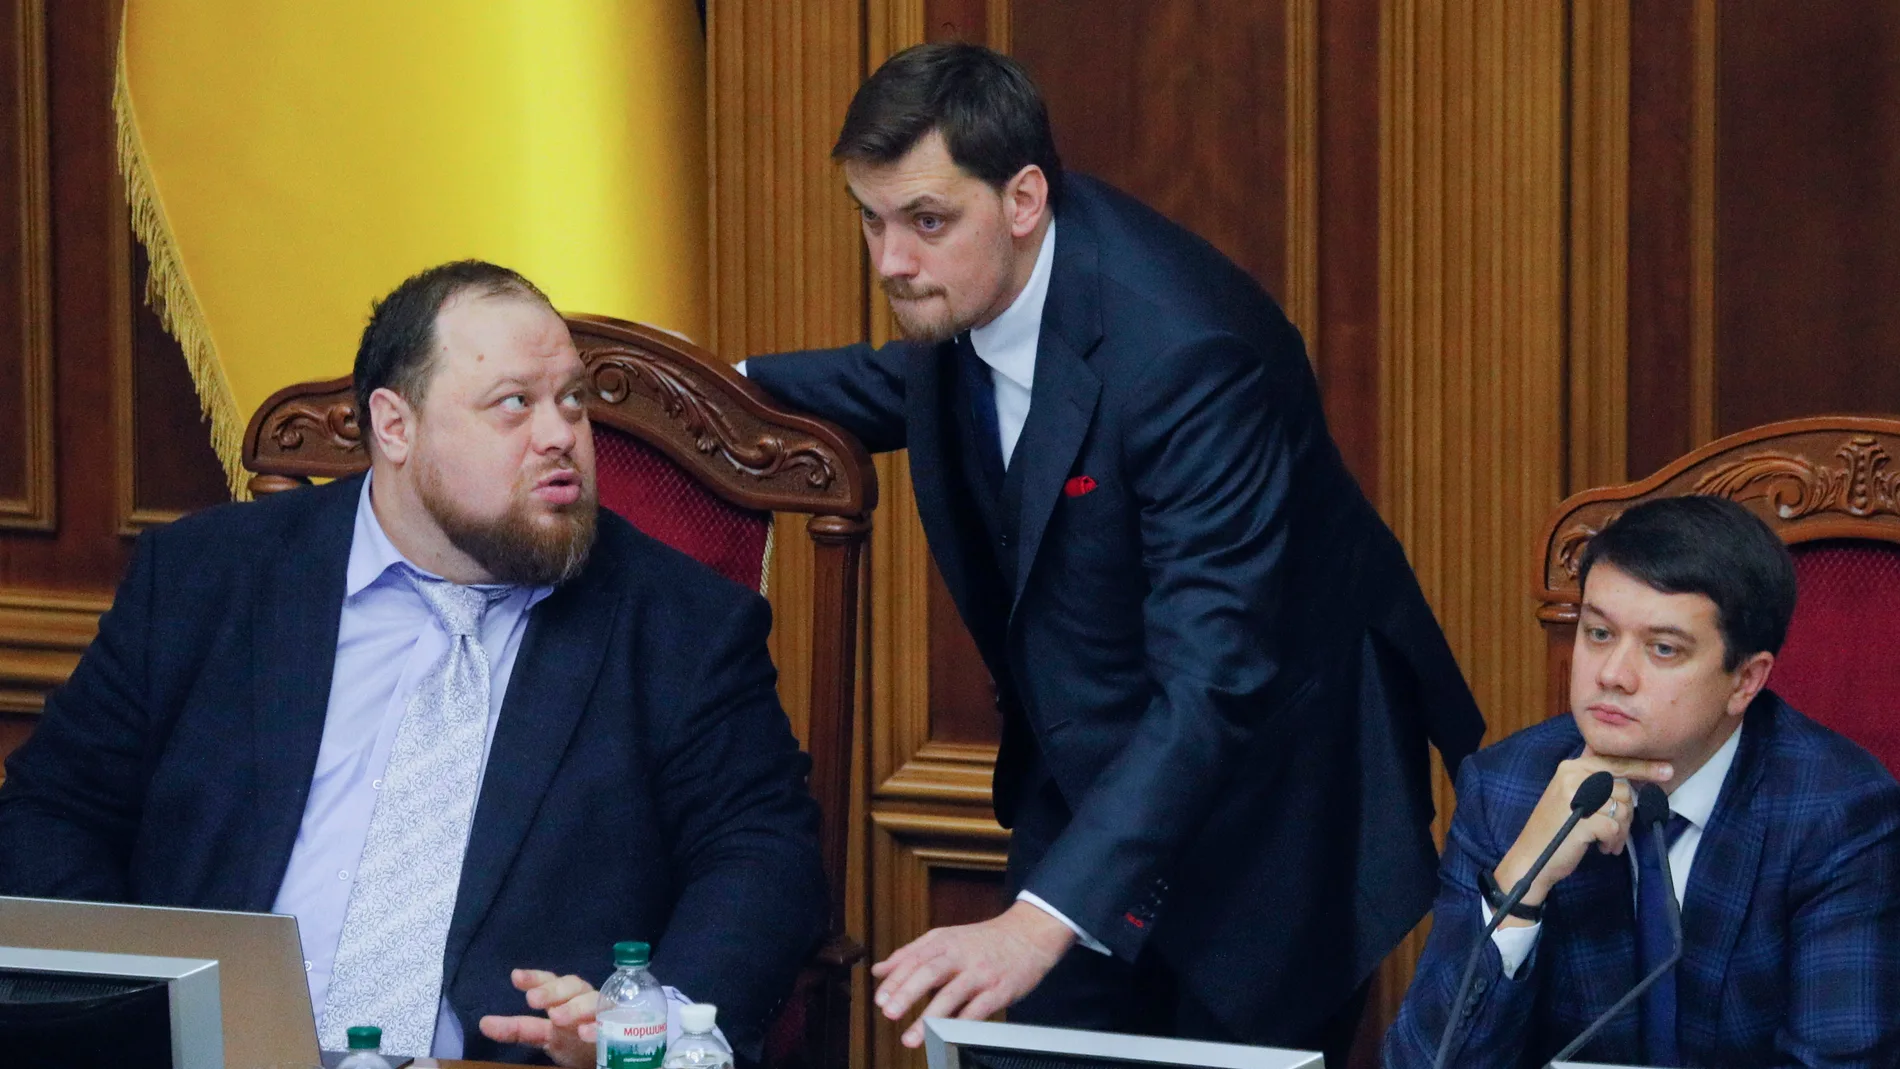 Ukrainian Prime Minister Oleksiy Goncharuk resigns